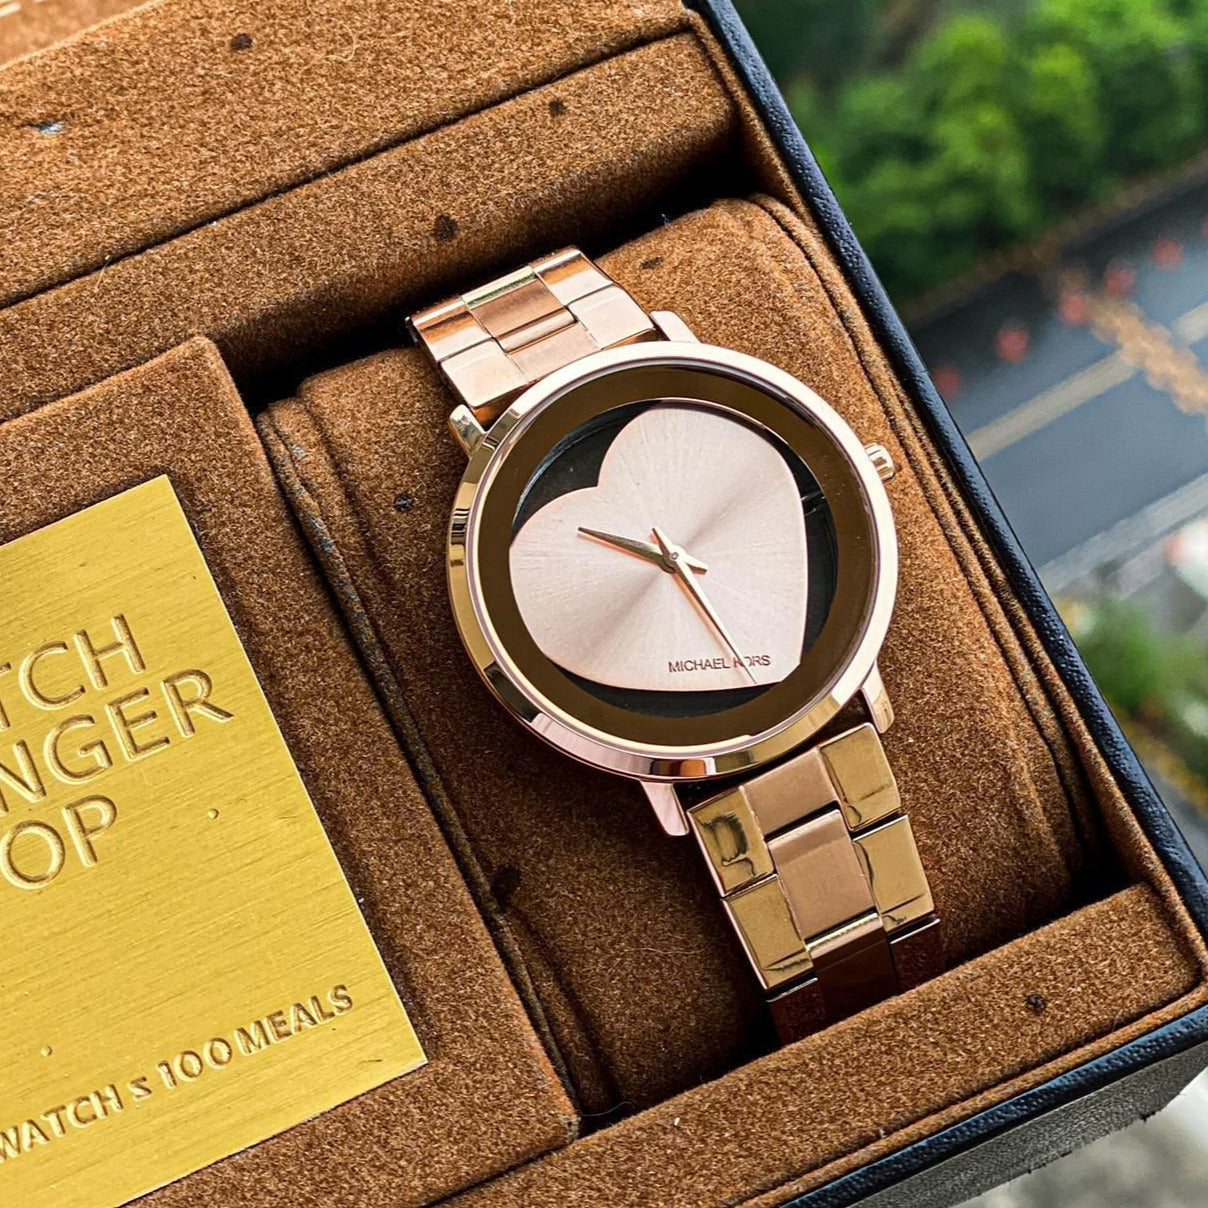 Amazing MK jaryn luxury watch - AmazingBaba